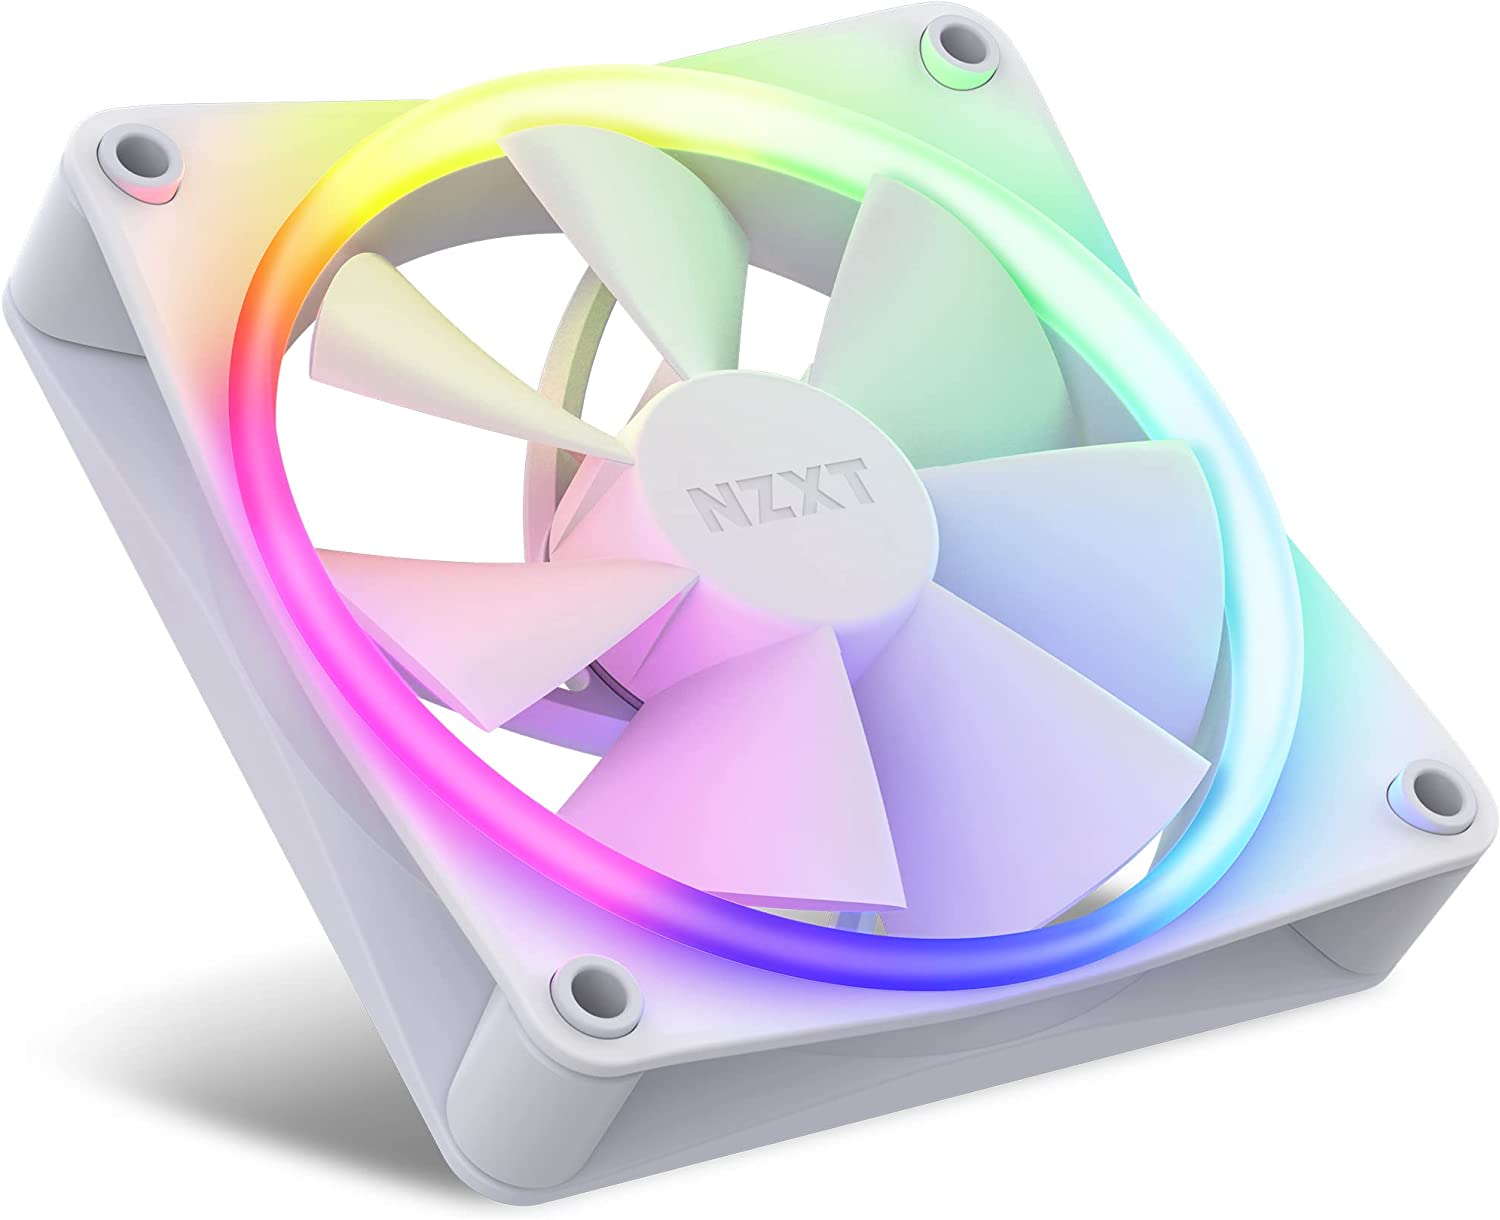 NZXT F120 RGB FANs Triple (RGB Fan & Controller Included) - 3x120mm Fan - White